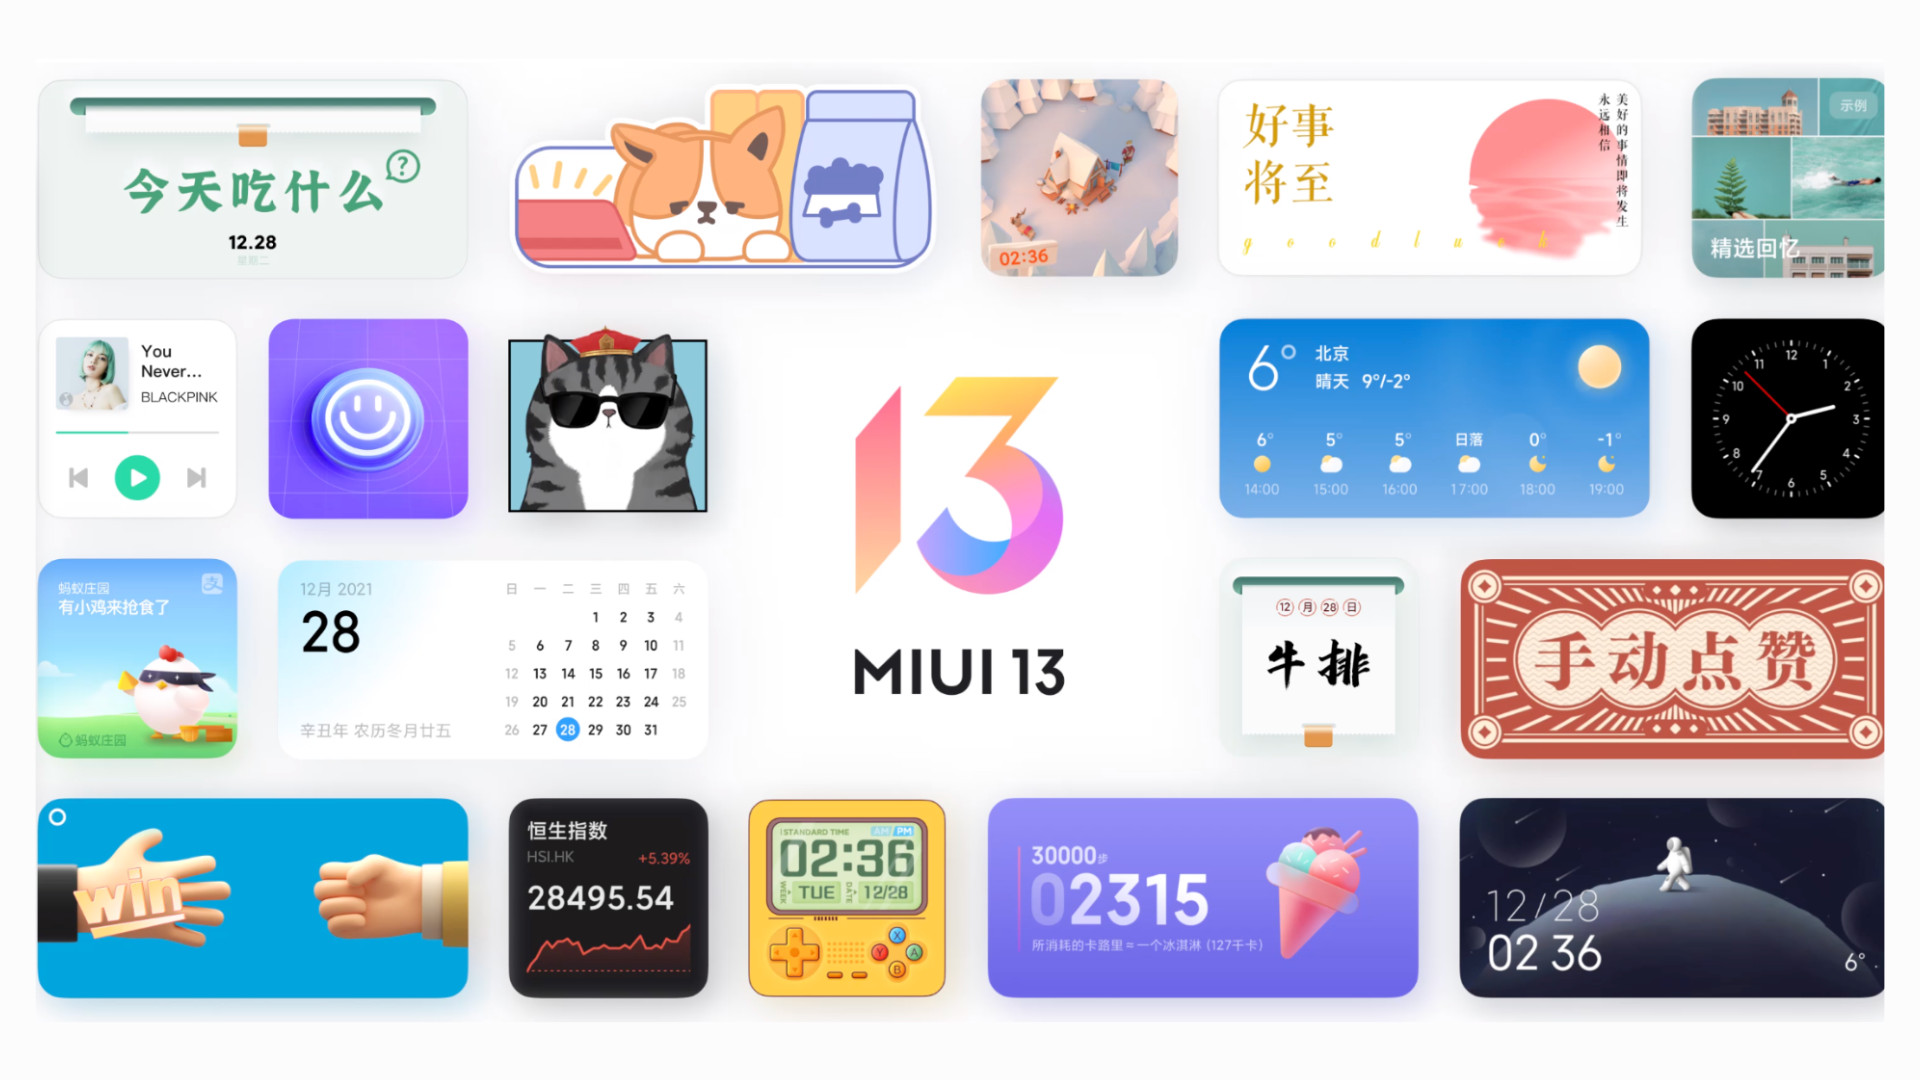 Xiaomi retrasa el lanzamiento del firmware MIUI 13 para tres teléfonos inteligentes 2020 debido a errores